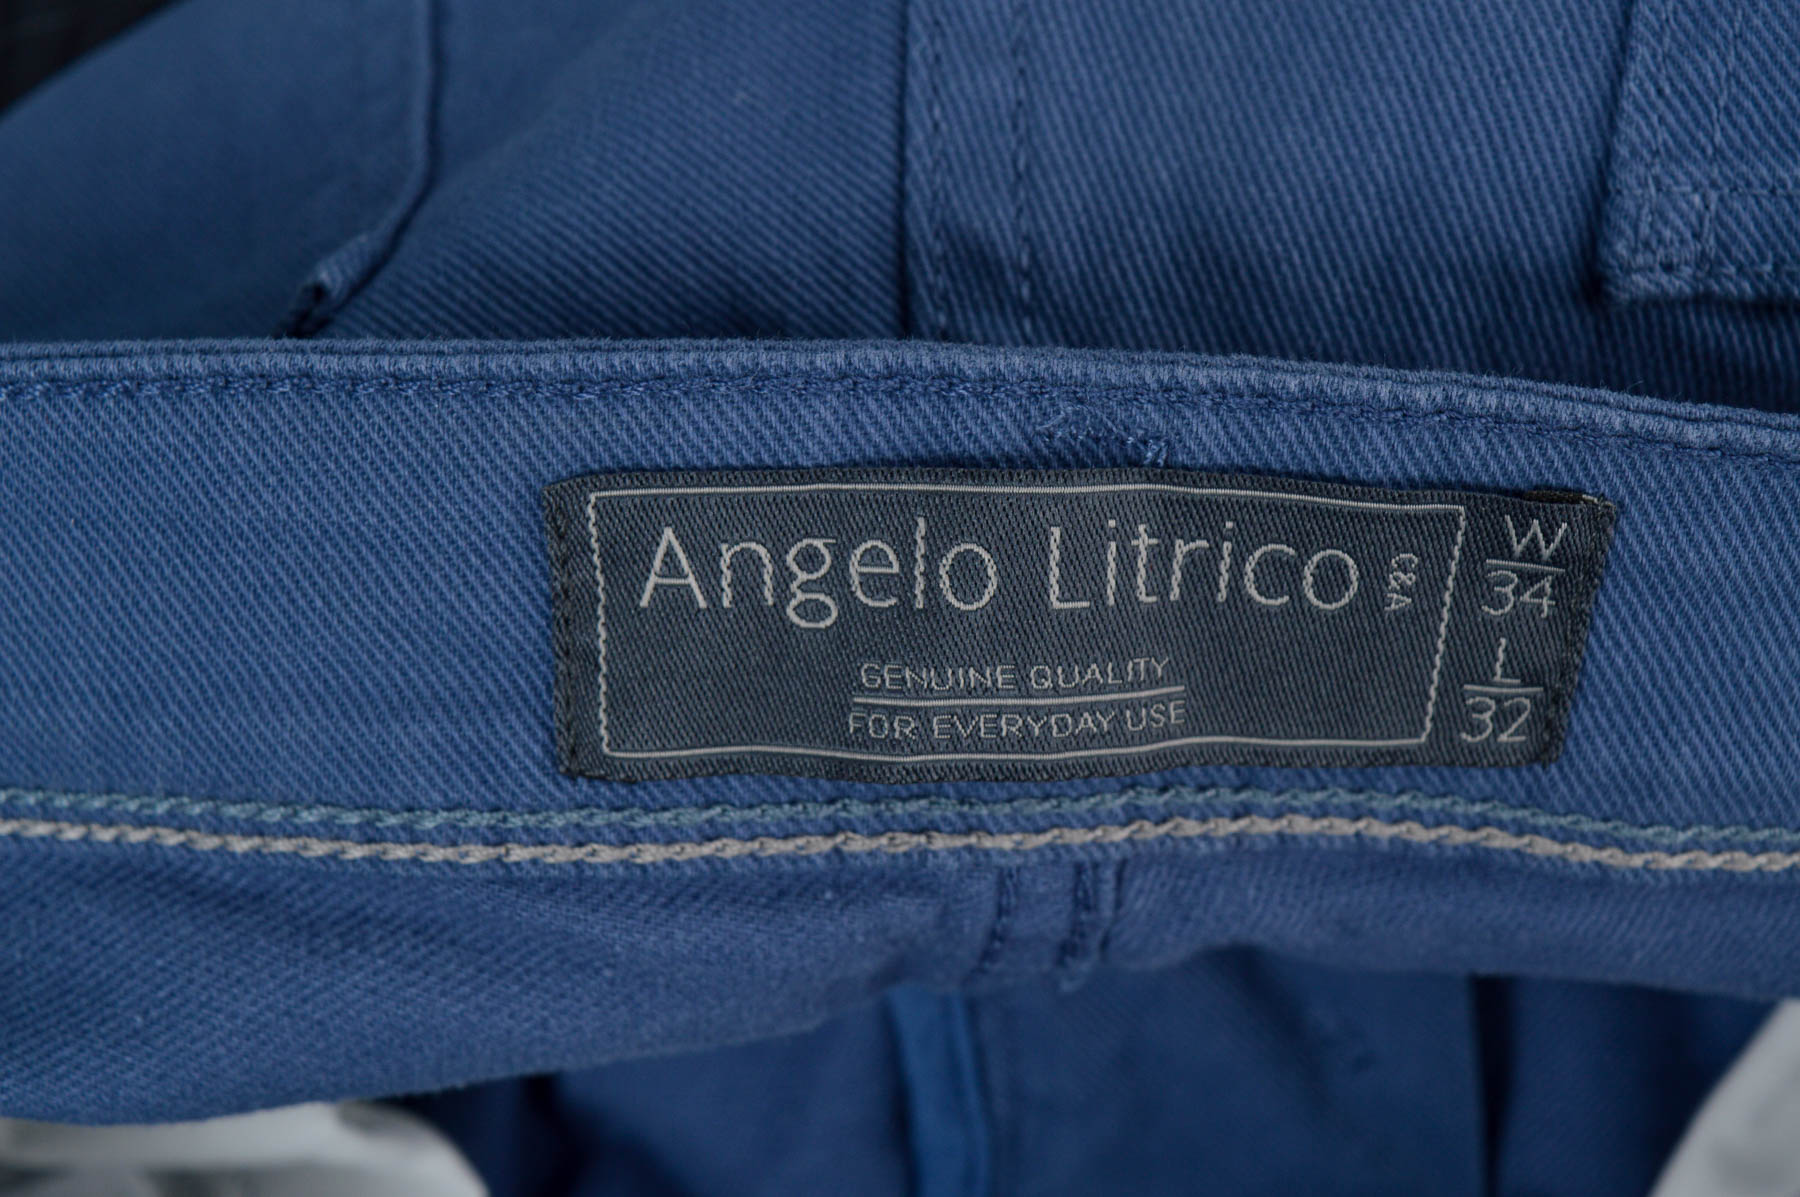 Męskie spodnie - Angelo Litrico - 2